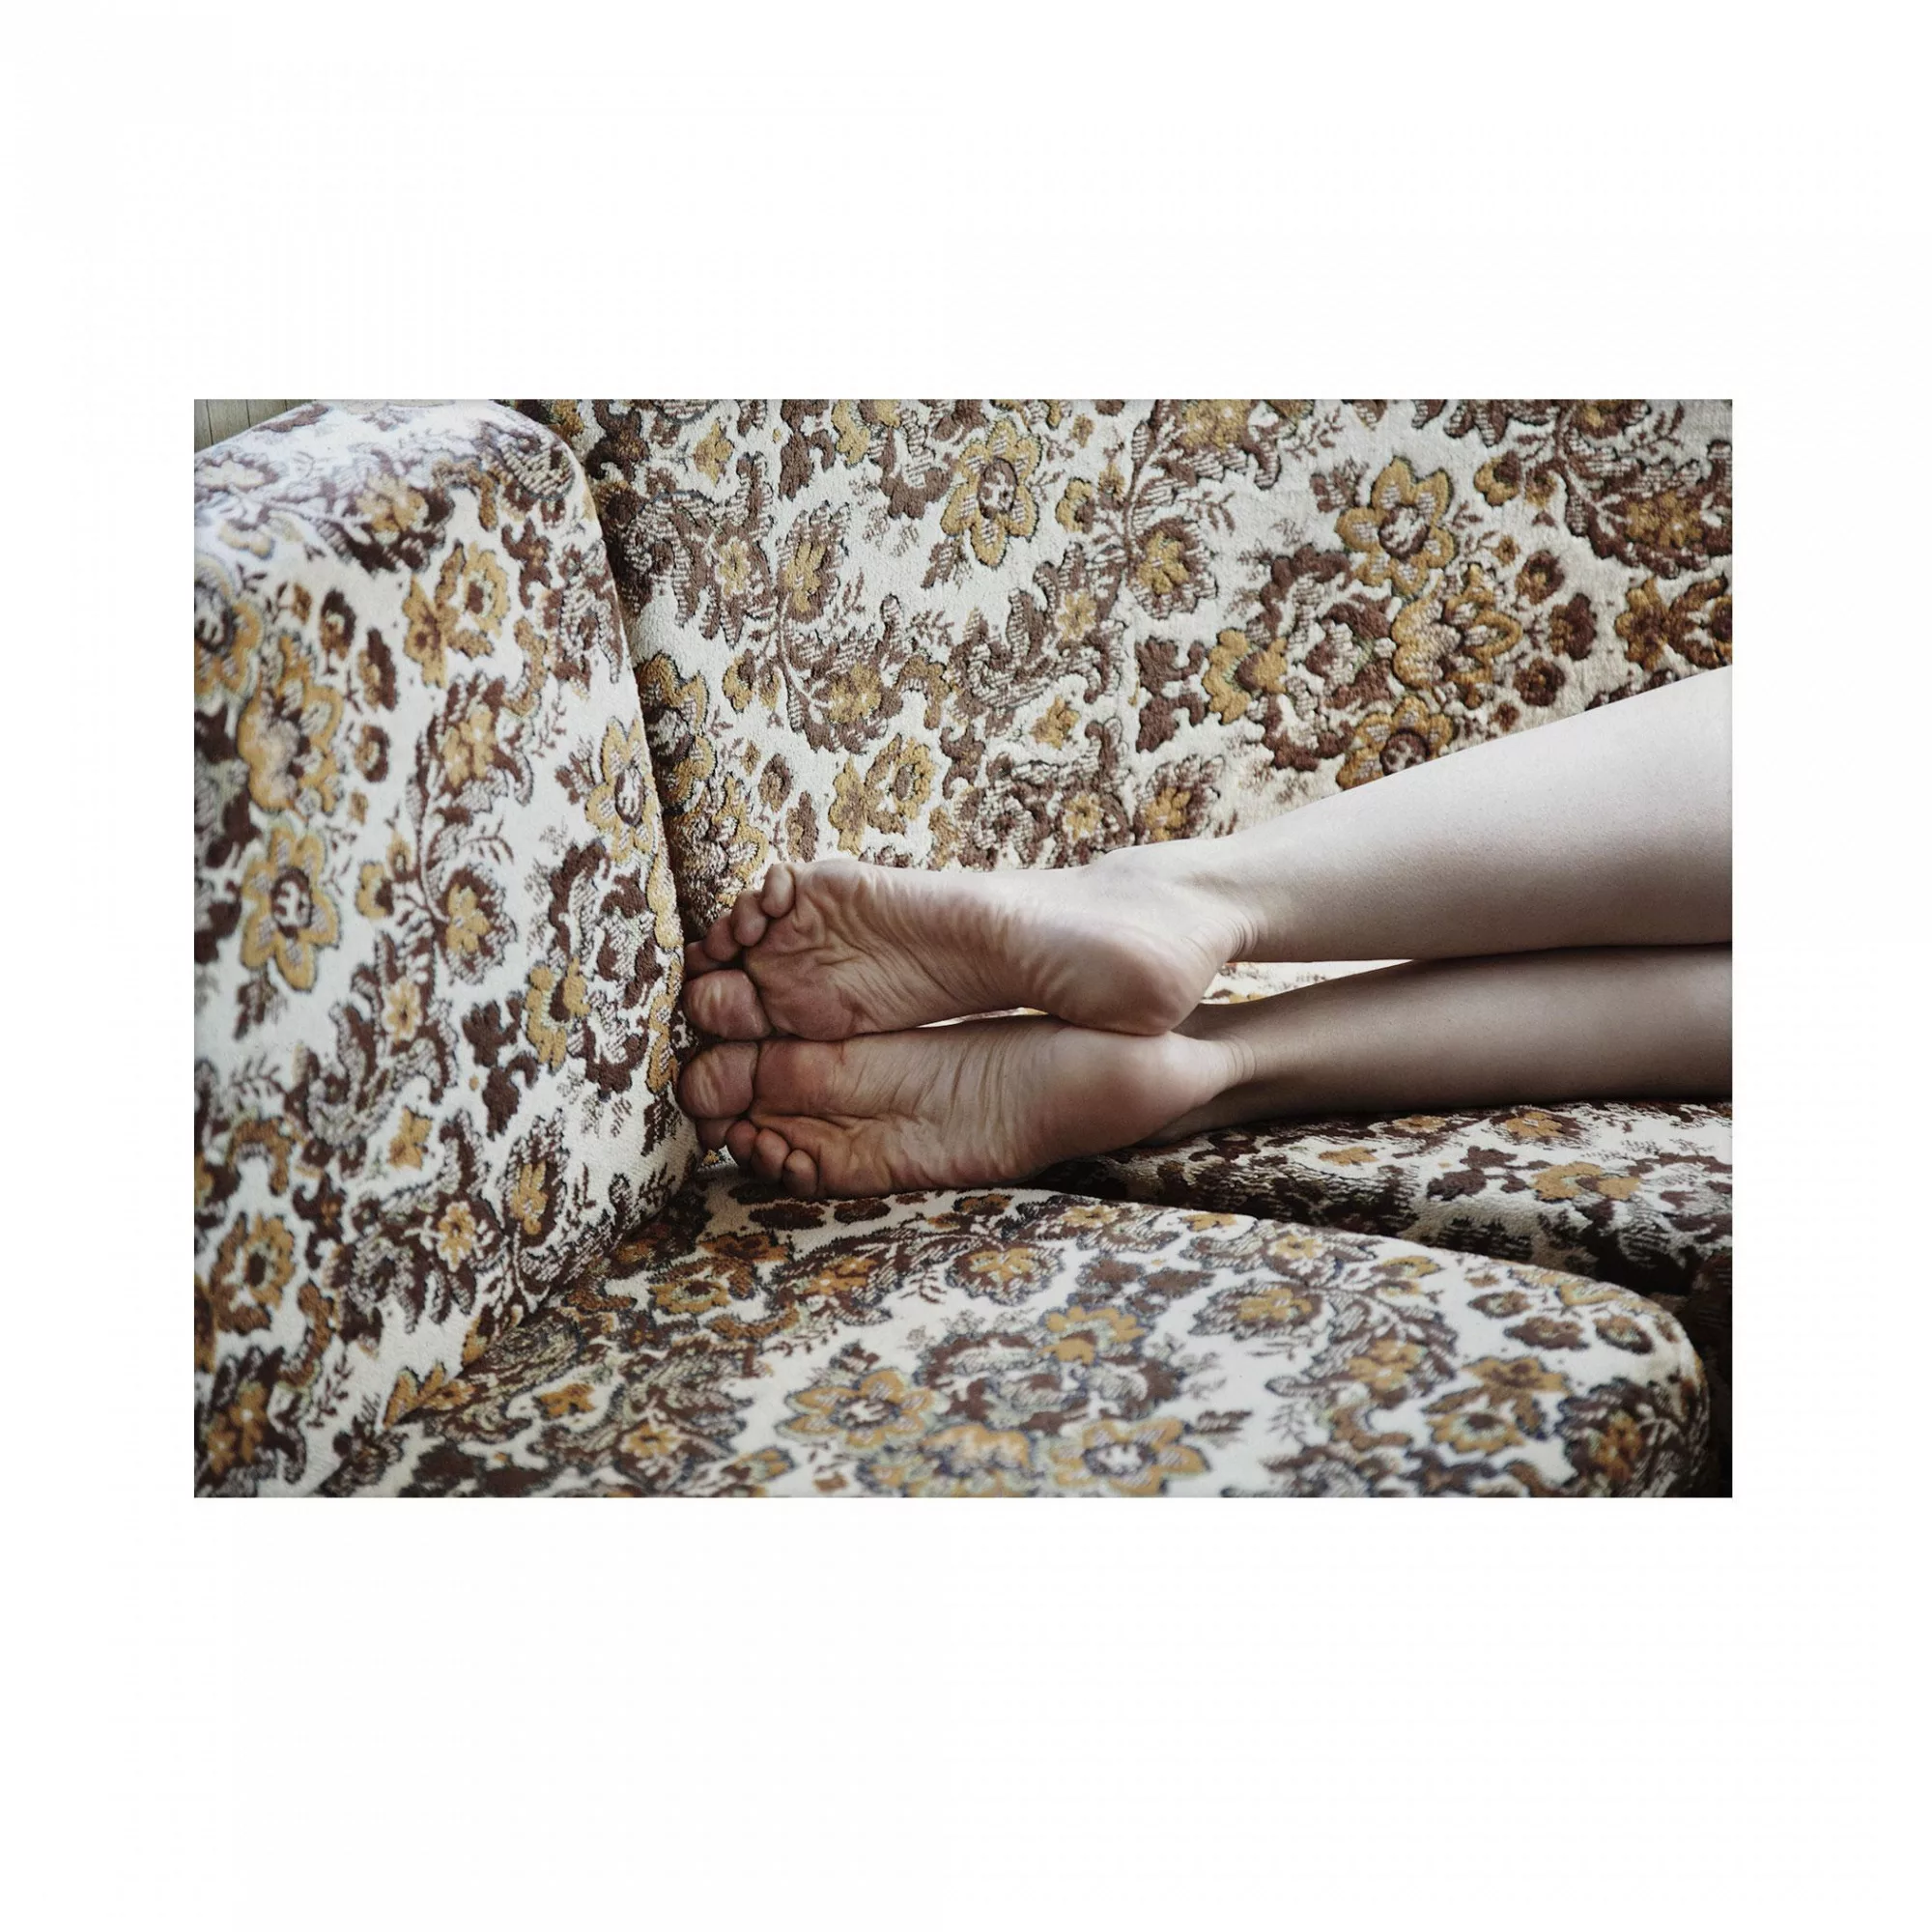 Paper Collective - Restless Feet Kunstdruck 40x30cm - braun, weiß, beige, s günstig online kaufen